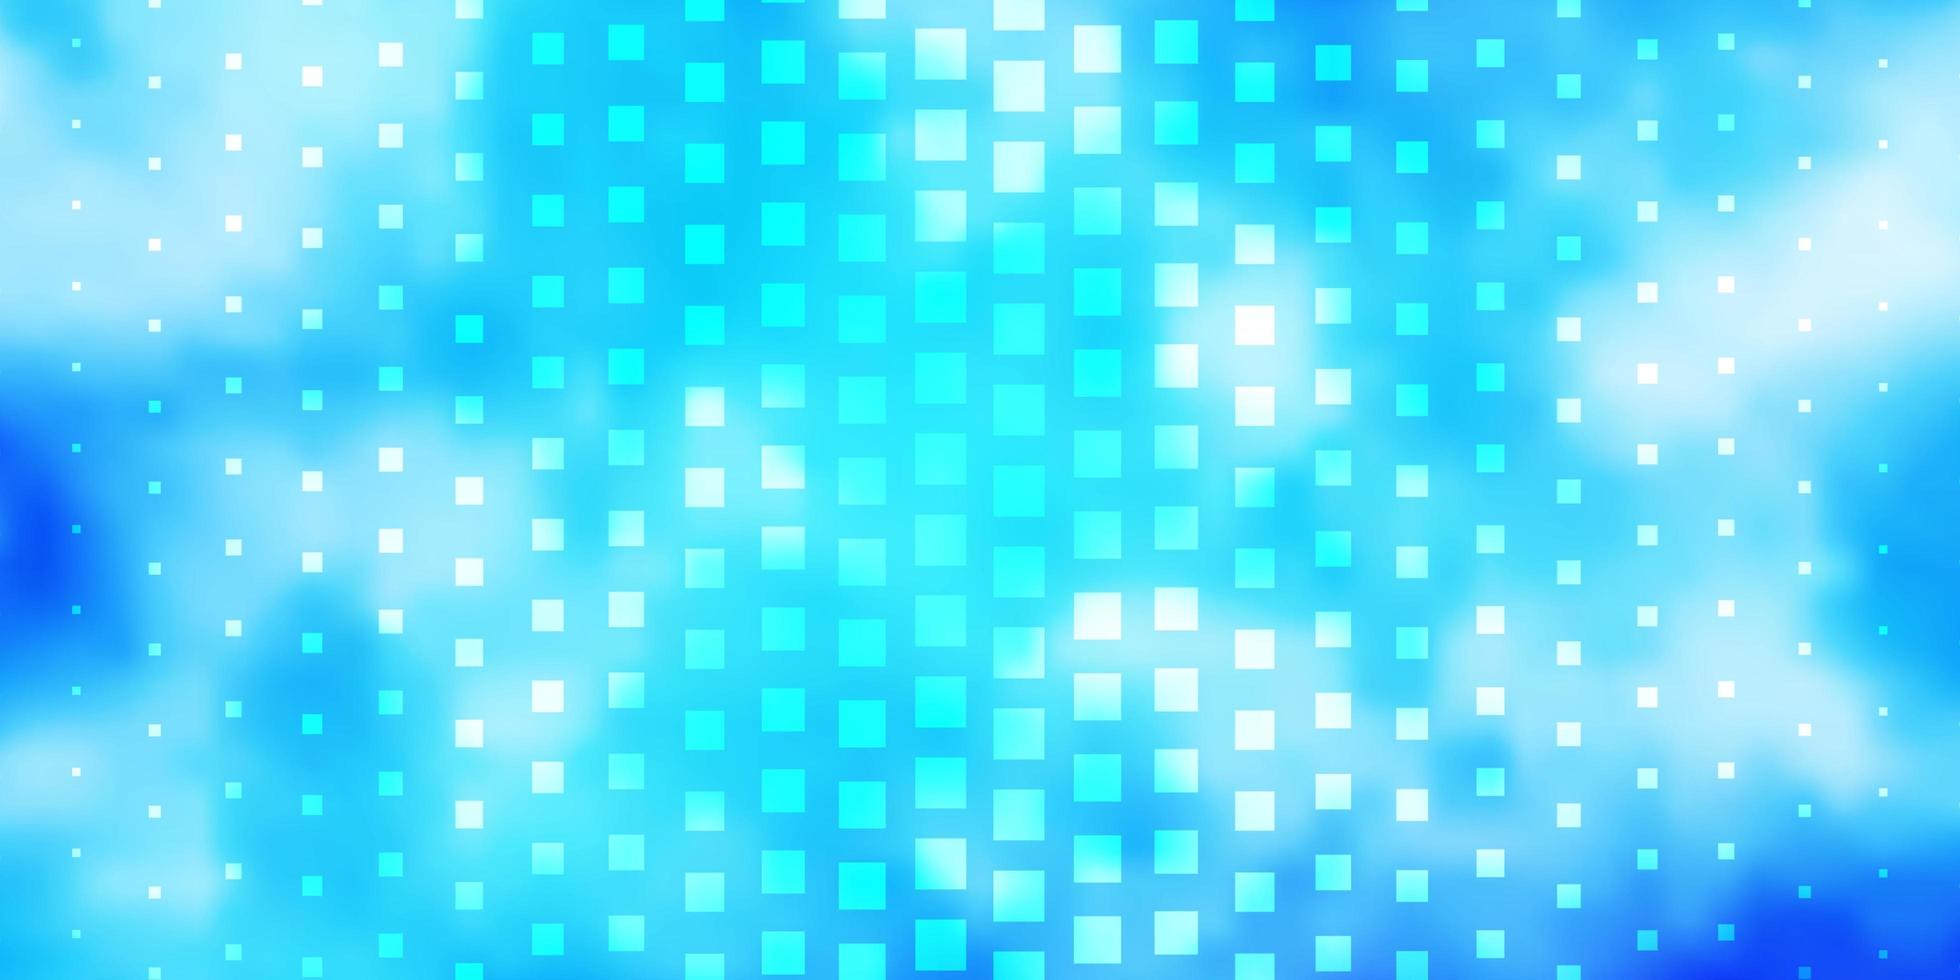 modelo de vetor azul claro com retângulos nova ilustração abstrata com formas retangulares modelo moderno para sua página de destino